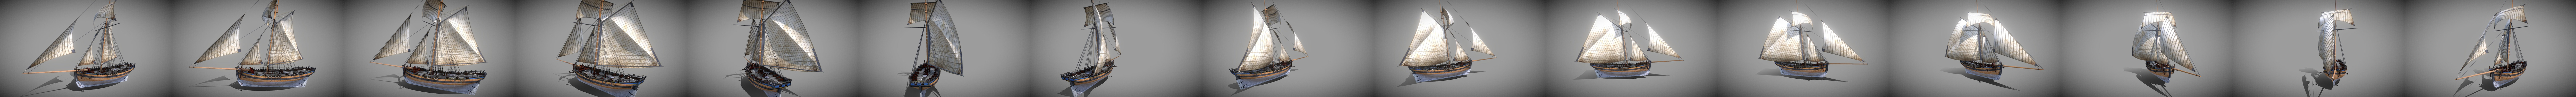 Plans de maquettes de navires Cutter Alert 1777 Meilleurs modèles